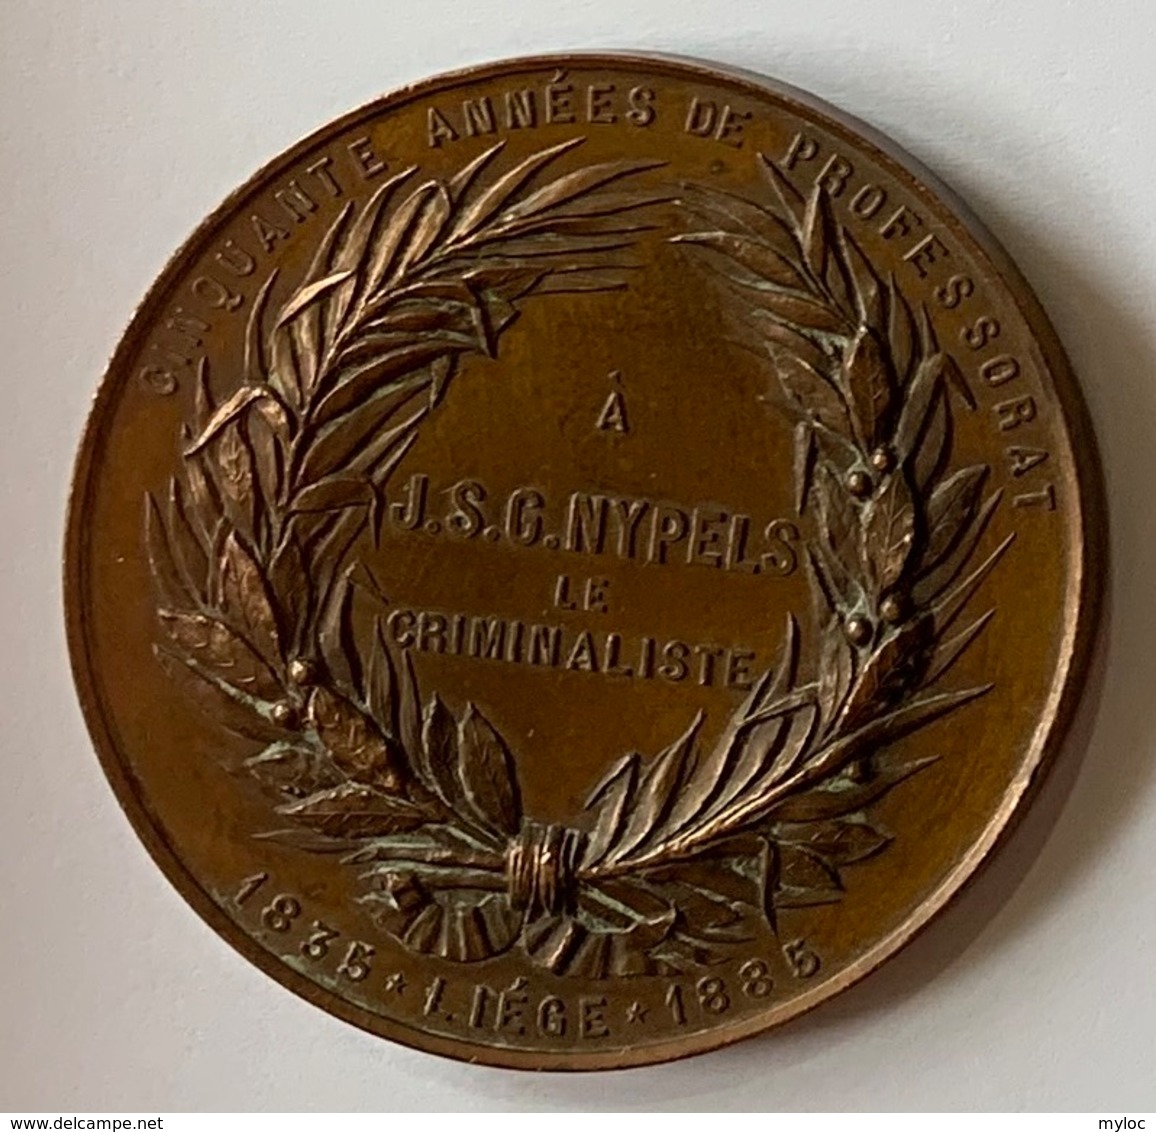 Médaille Bronze. Professeur J.S.G. Nypels. Criminalliste. Cinquante Années De Professorat. Liège 1835-1885. E. Geerts. - Profesionales / De Sociedad